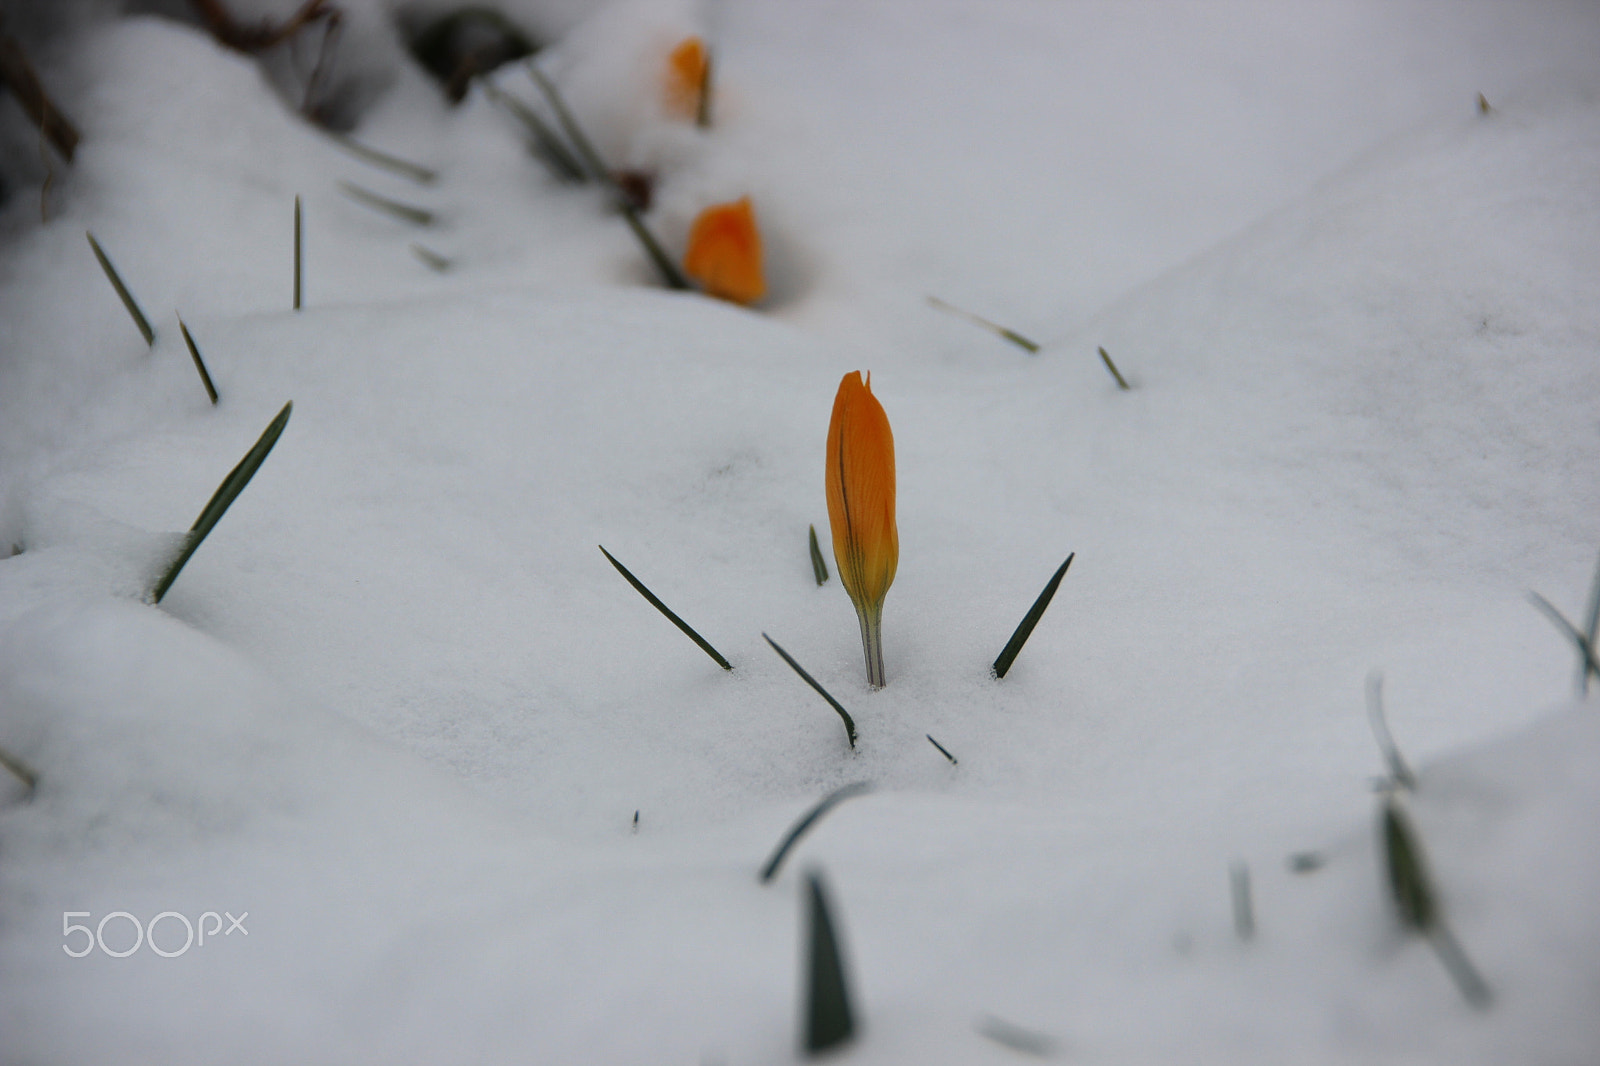 Canon EOS 600D (Rebel EOS T3i / EOS Kiss X5) sample photo. Snow in garden. photography